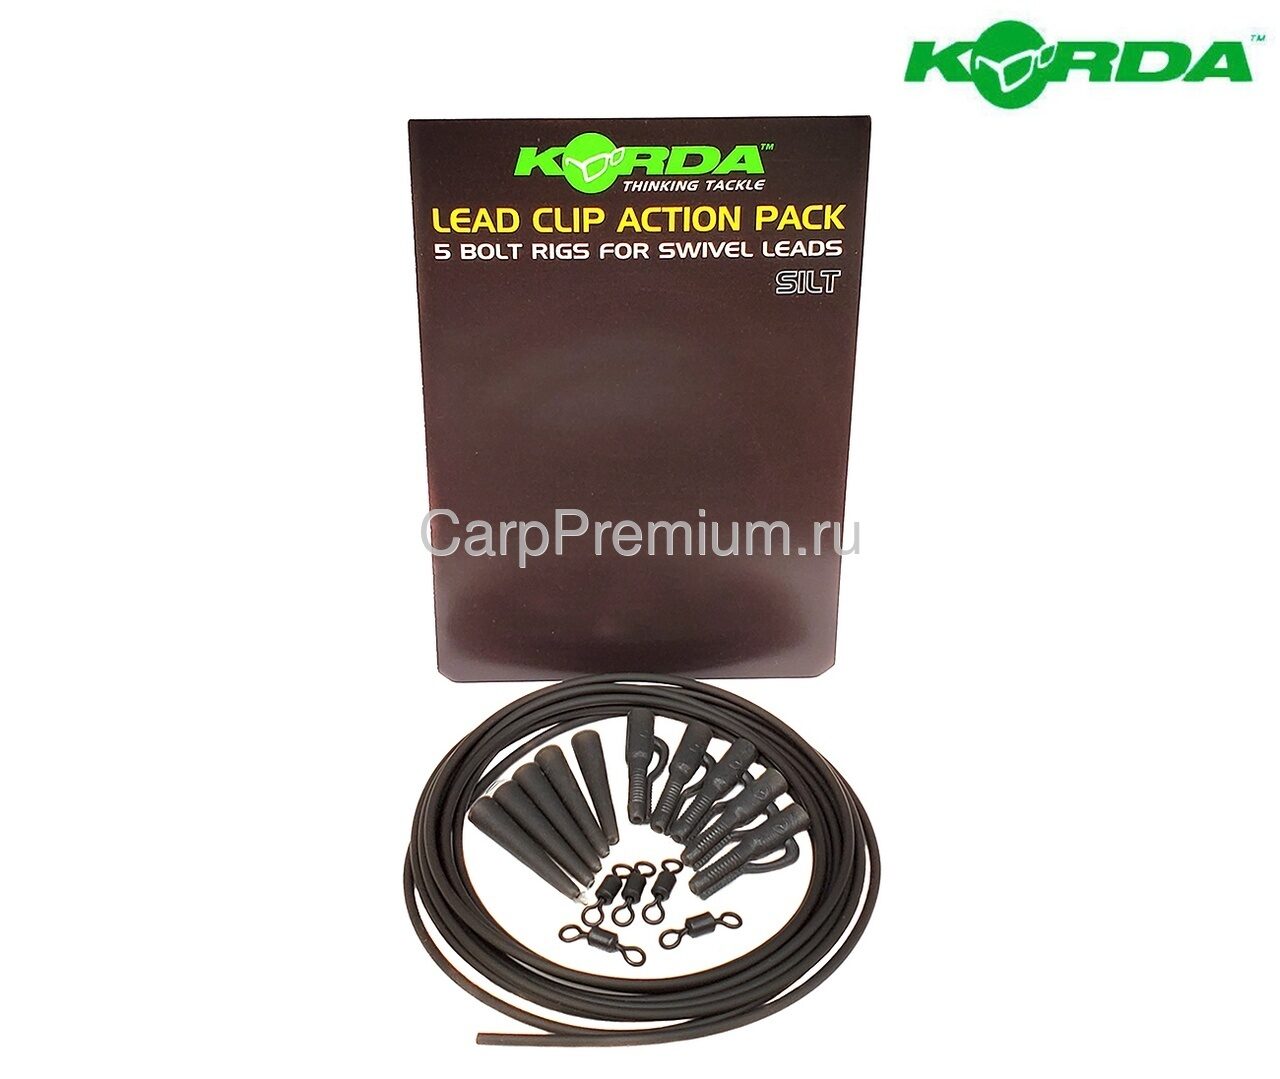 Оснастка карповая с клипсой и трубкой противозакручивателем Серая Korda (Корда) - Lead Clip Action Pack Slit, 5 шт